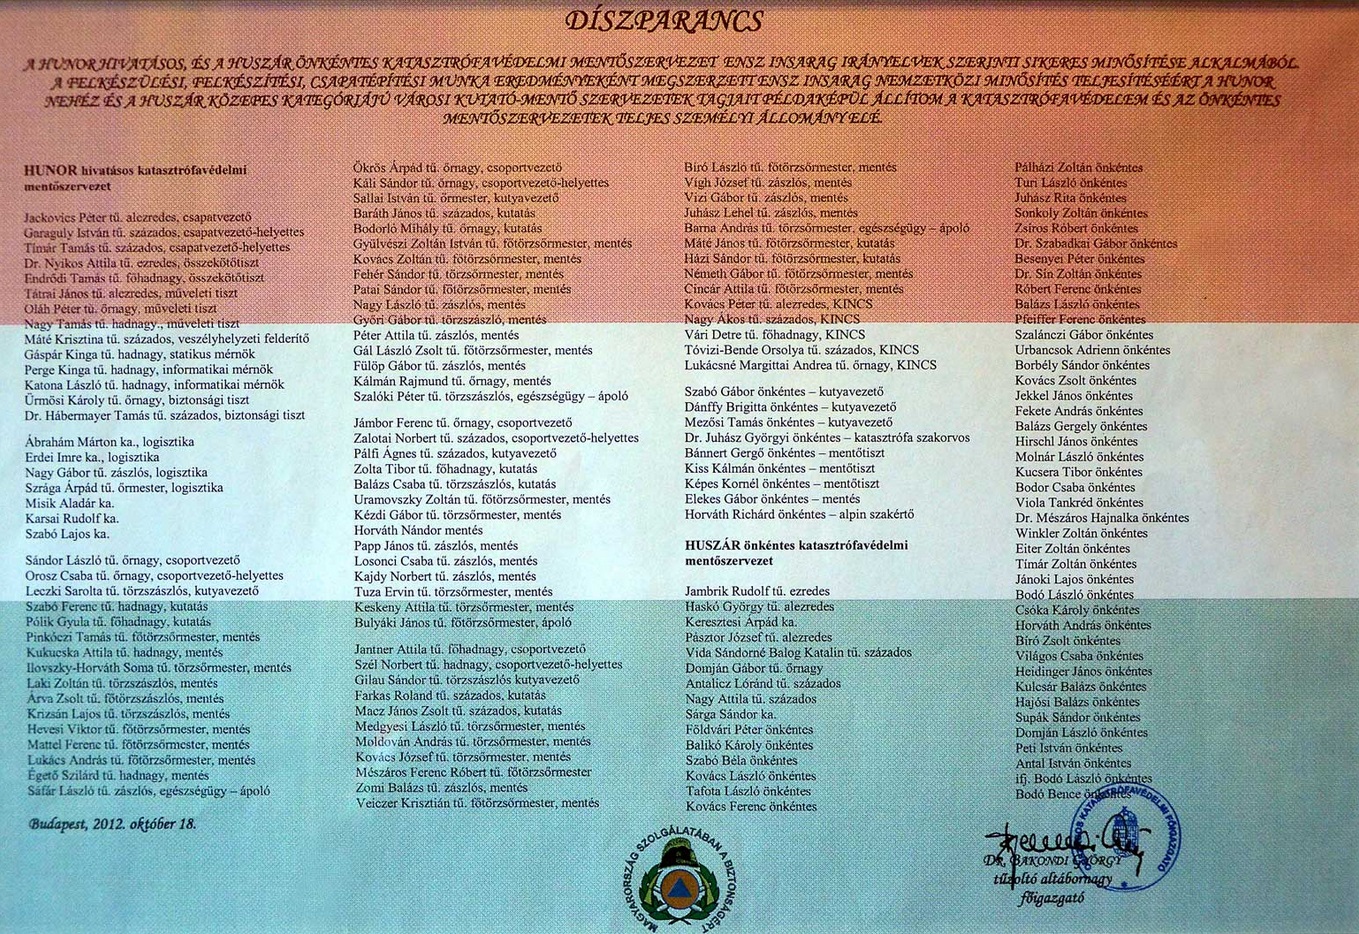 2012. október 18. díszparancsról készült kép, kattintásra nagyítható